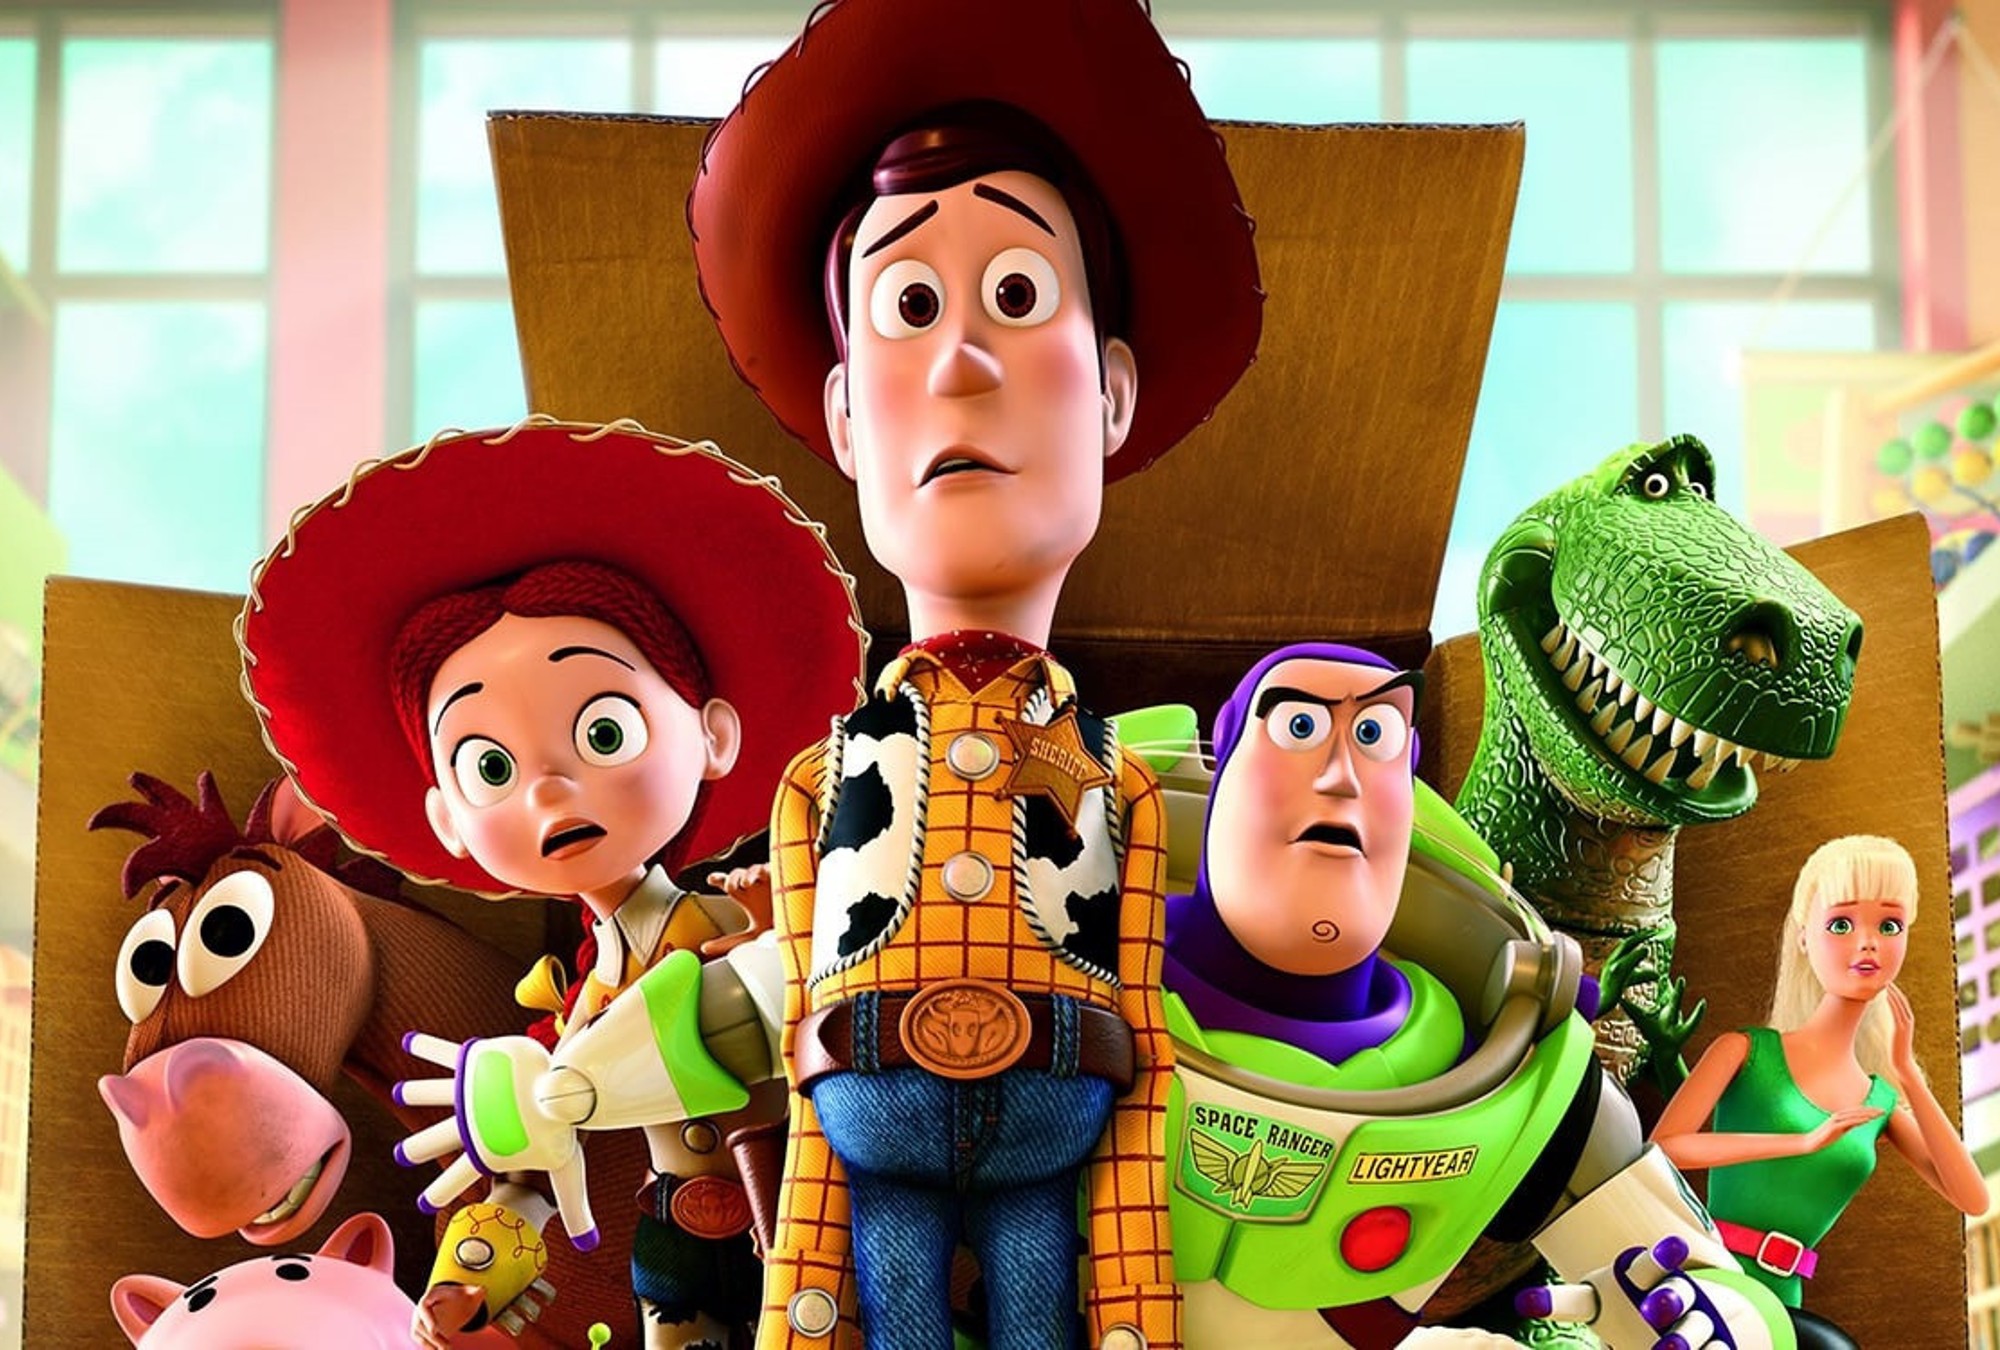 Мультсериалы 4 года. История игрушек 3 большой побег. История игрушек: большой побег / Toy story 3. Disney Pixar Toy story 3.